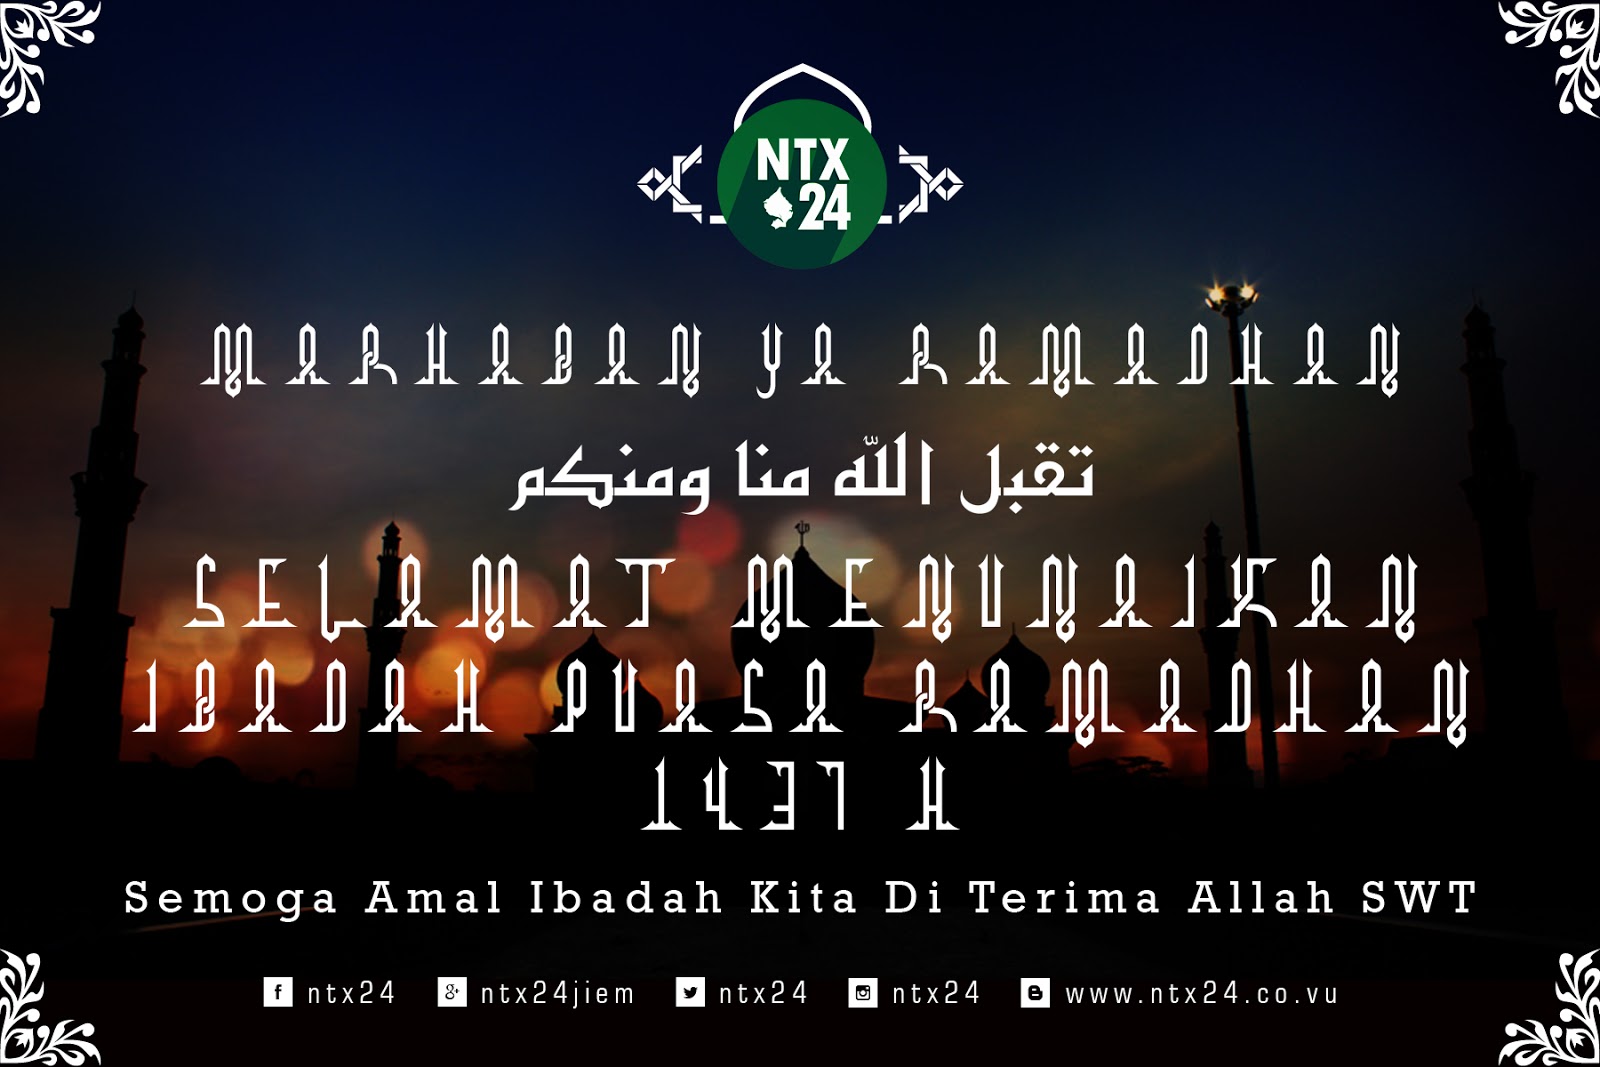 25+ Ucapan Marhaban Ya Ramadhan Ideas  Kata Mutiara Terbaru